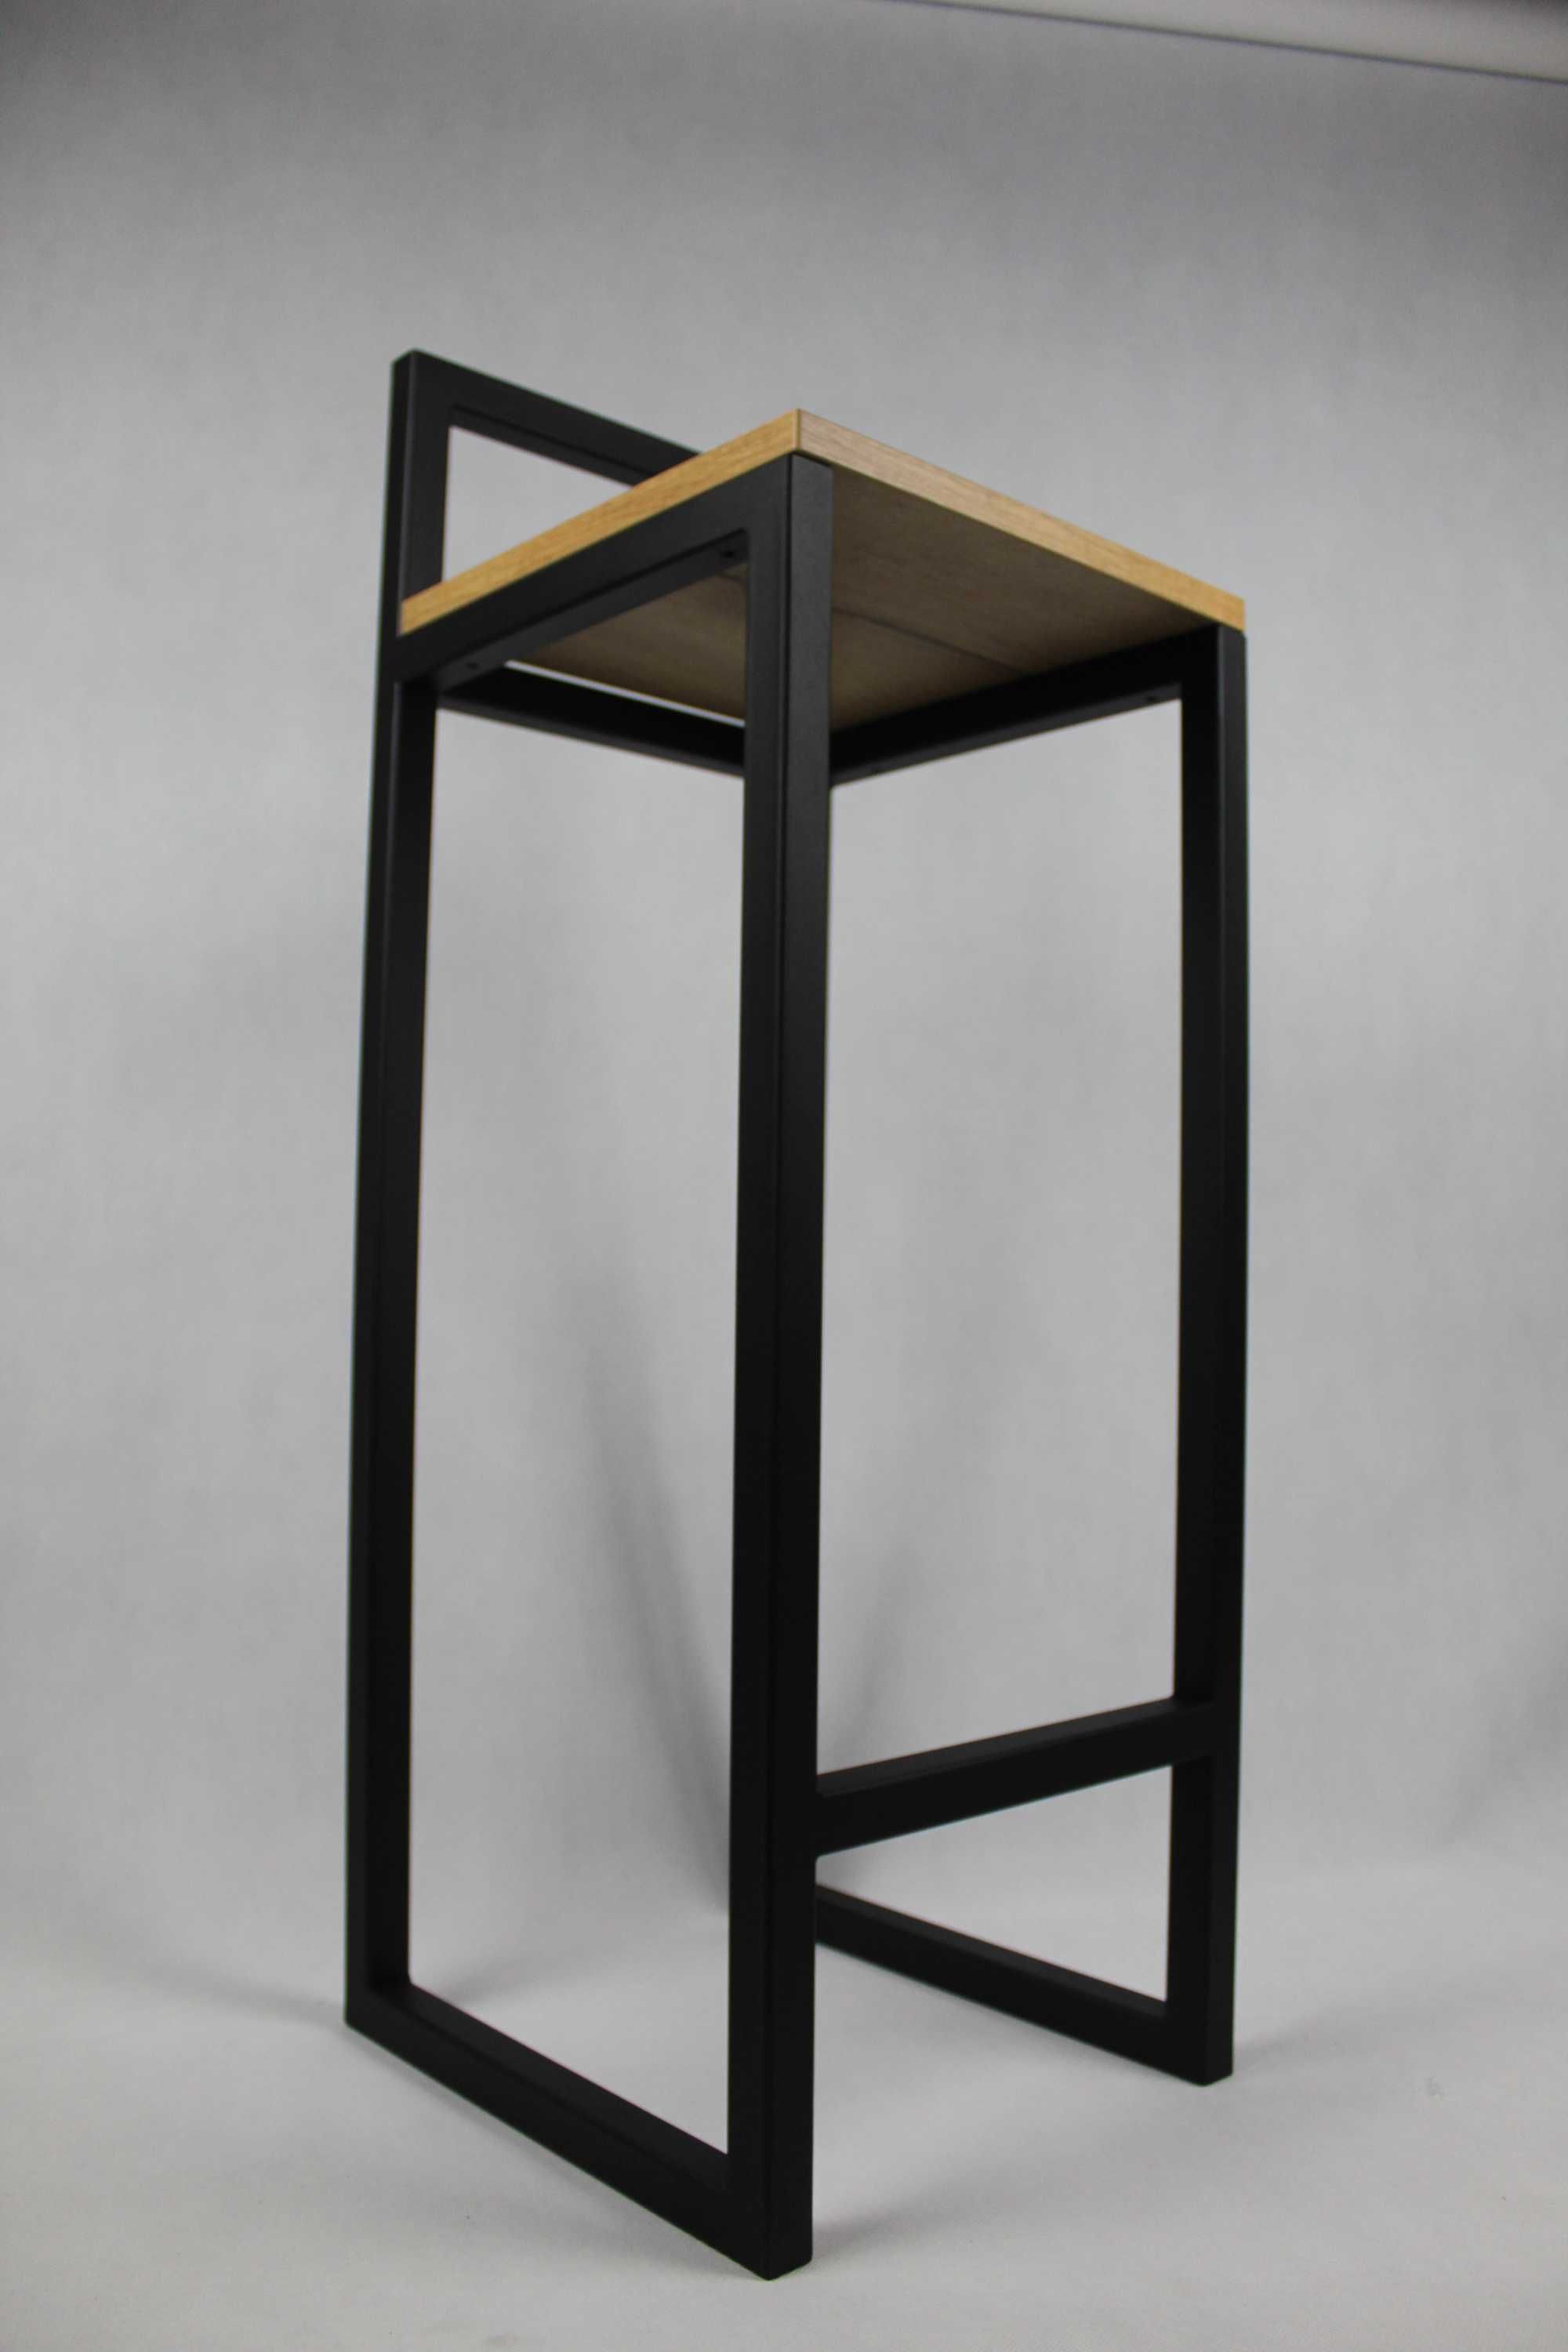 Stelaż metalowy hoker stołek z oparciem styl Loft industrialny